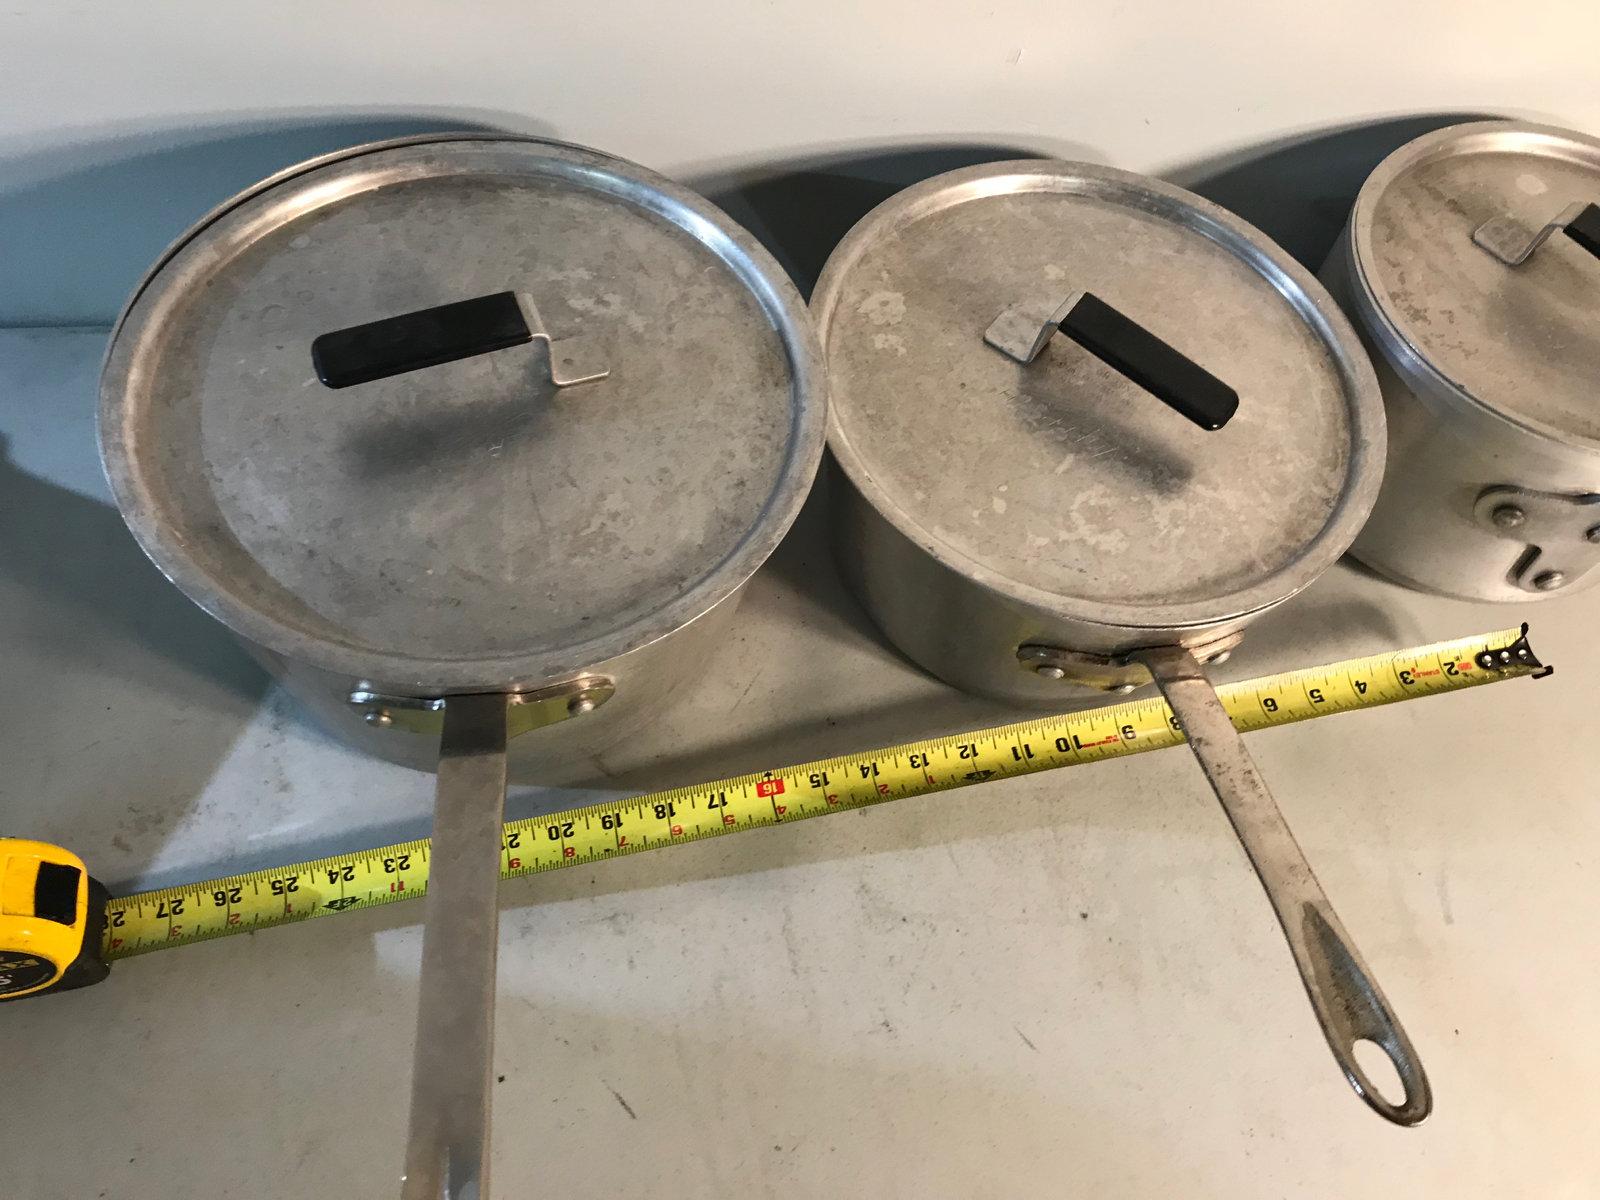 3 commercial sauce pans